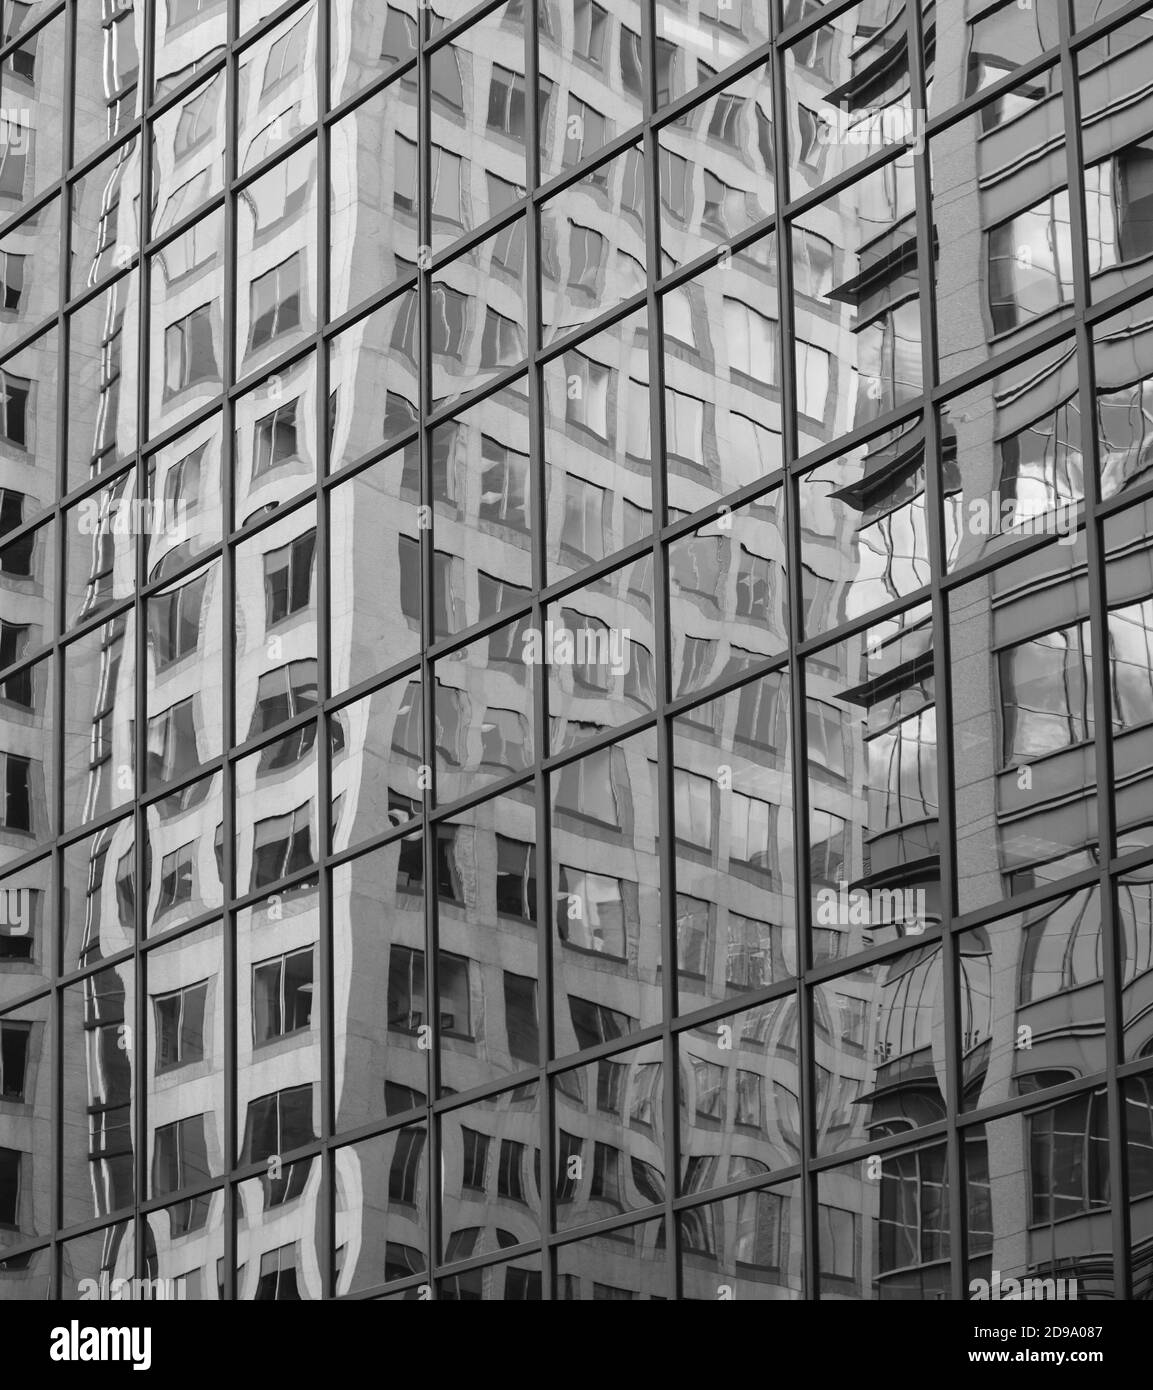 Noir et blanc réflexions de bâtiment sur un bâtiment fait de panneaux de fenêtre carrés agissant comme des miroirs Banque D'Images